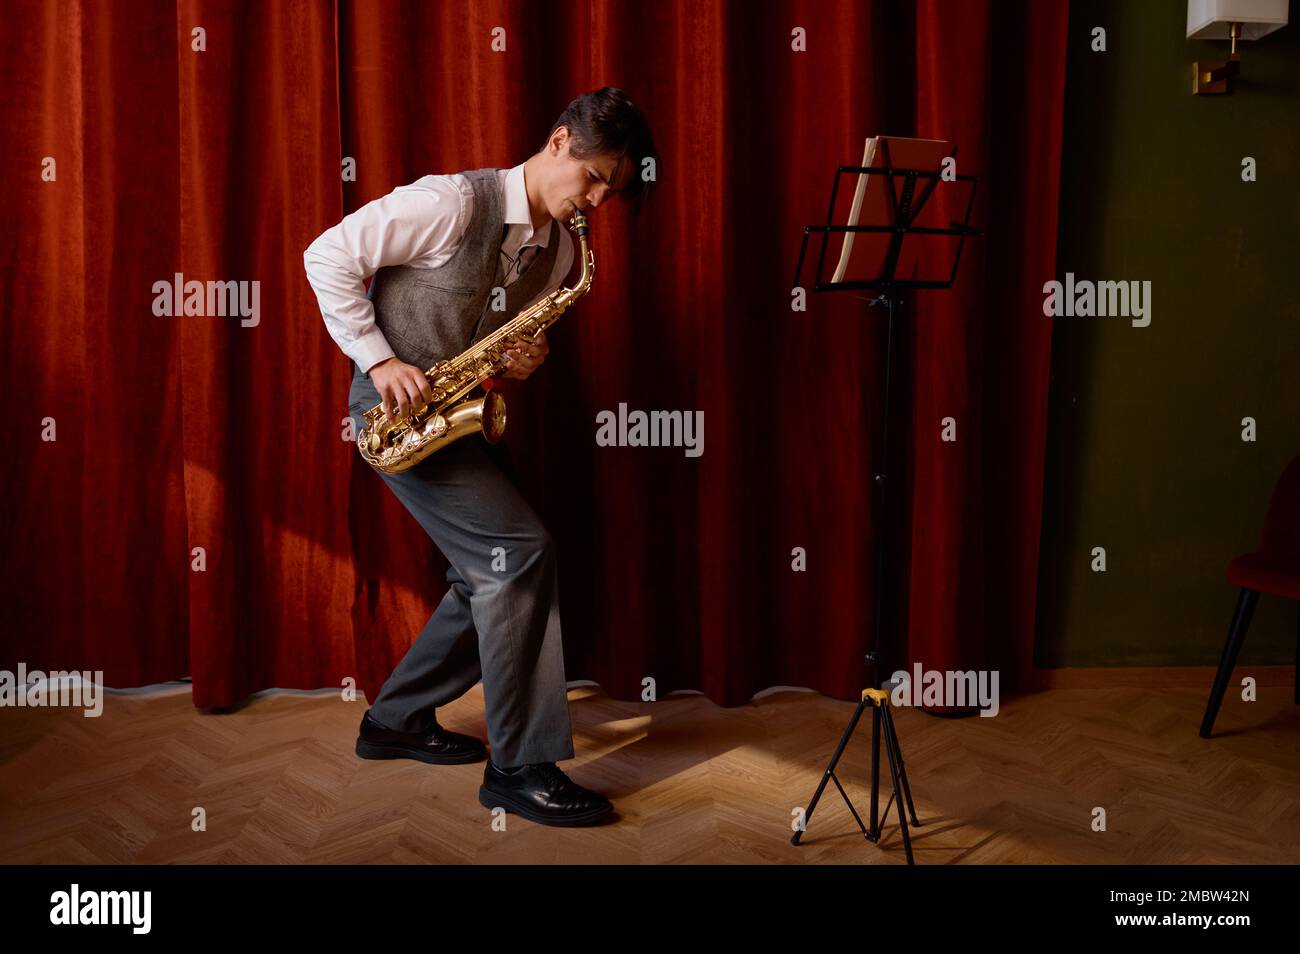 Un jeune musicien attrayant joue du saxophone ténor sur scène avec des rideaux drapés rouges Banque D'Images